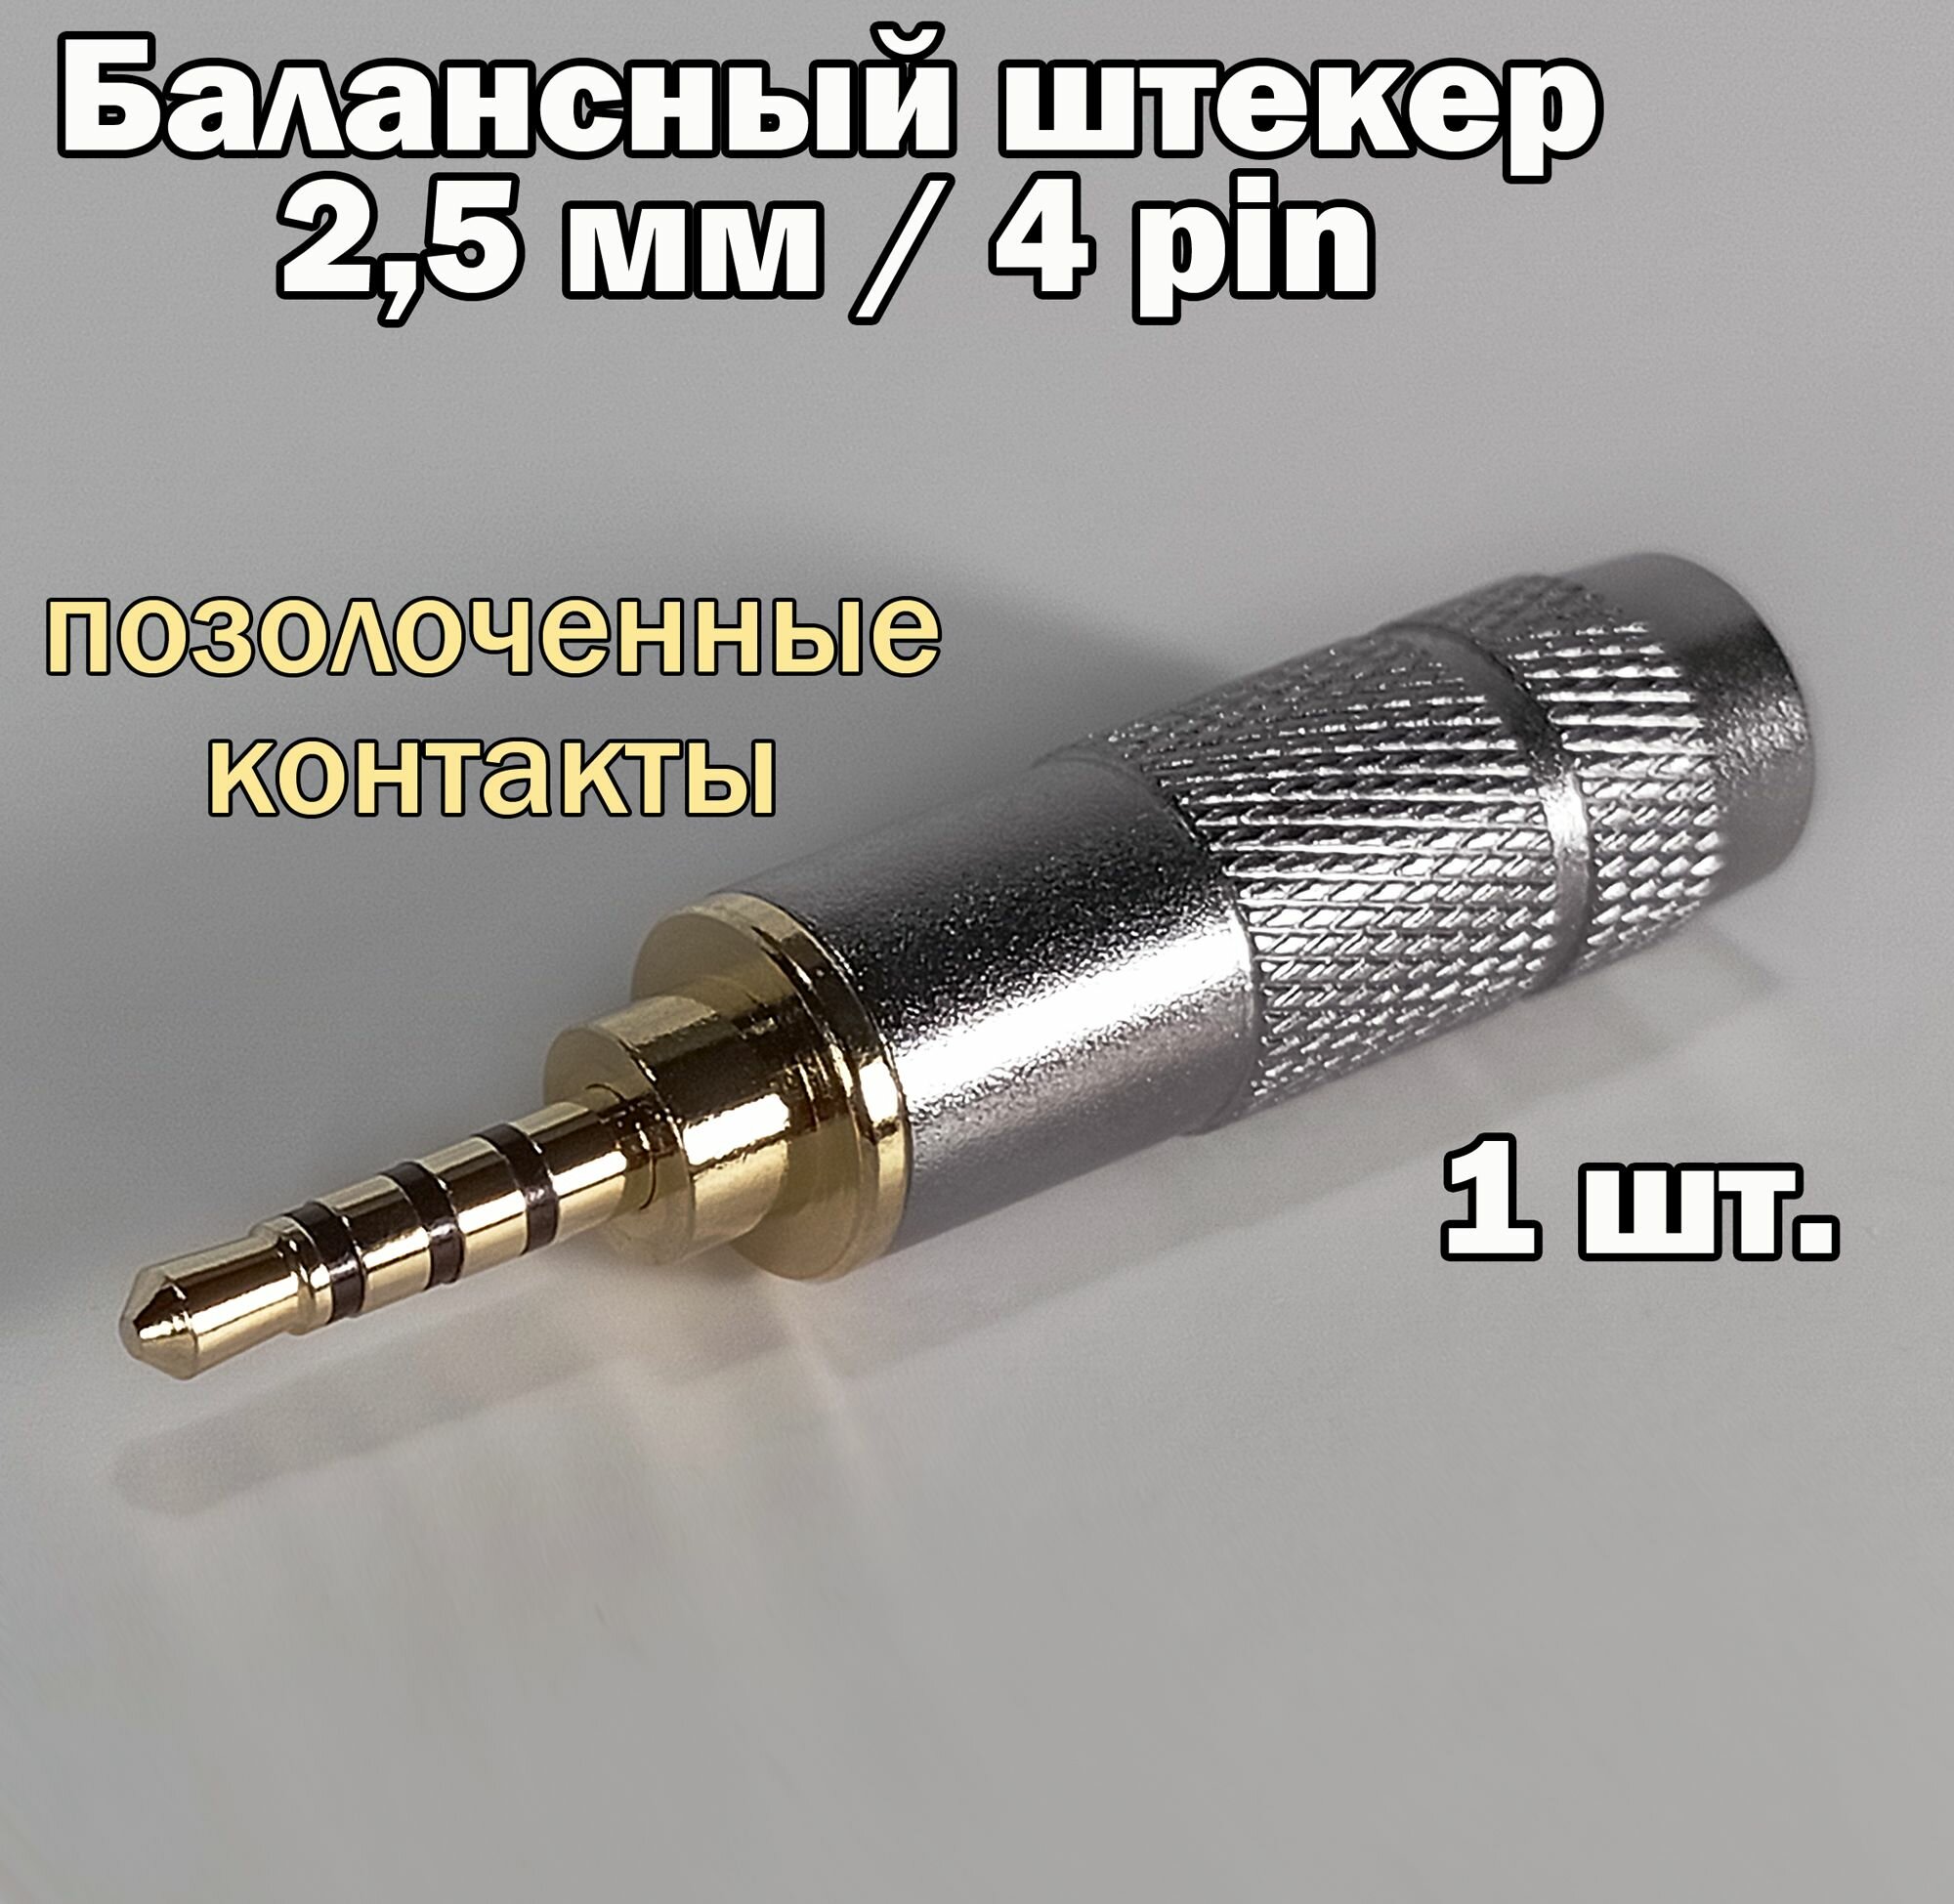 Балансный аудио разъем (штекер) micro Jack 2,5 мм / 4 pin, под пайку, позолоченный, металлический